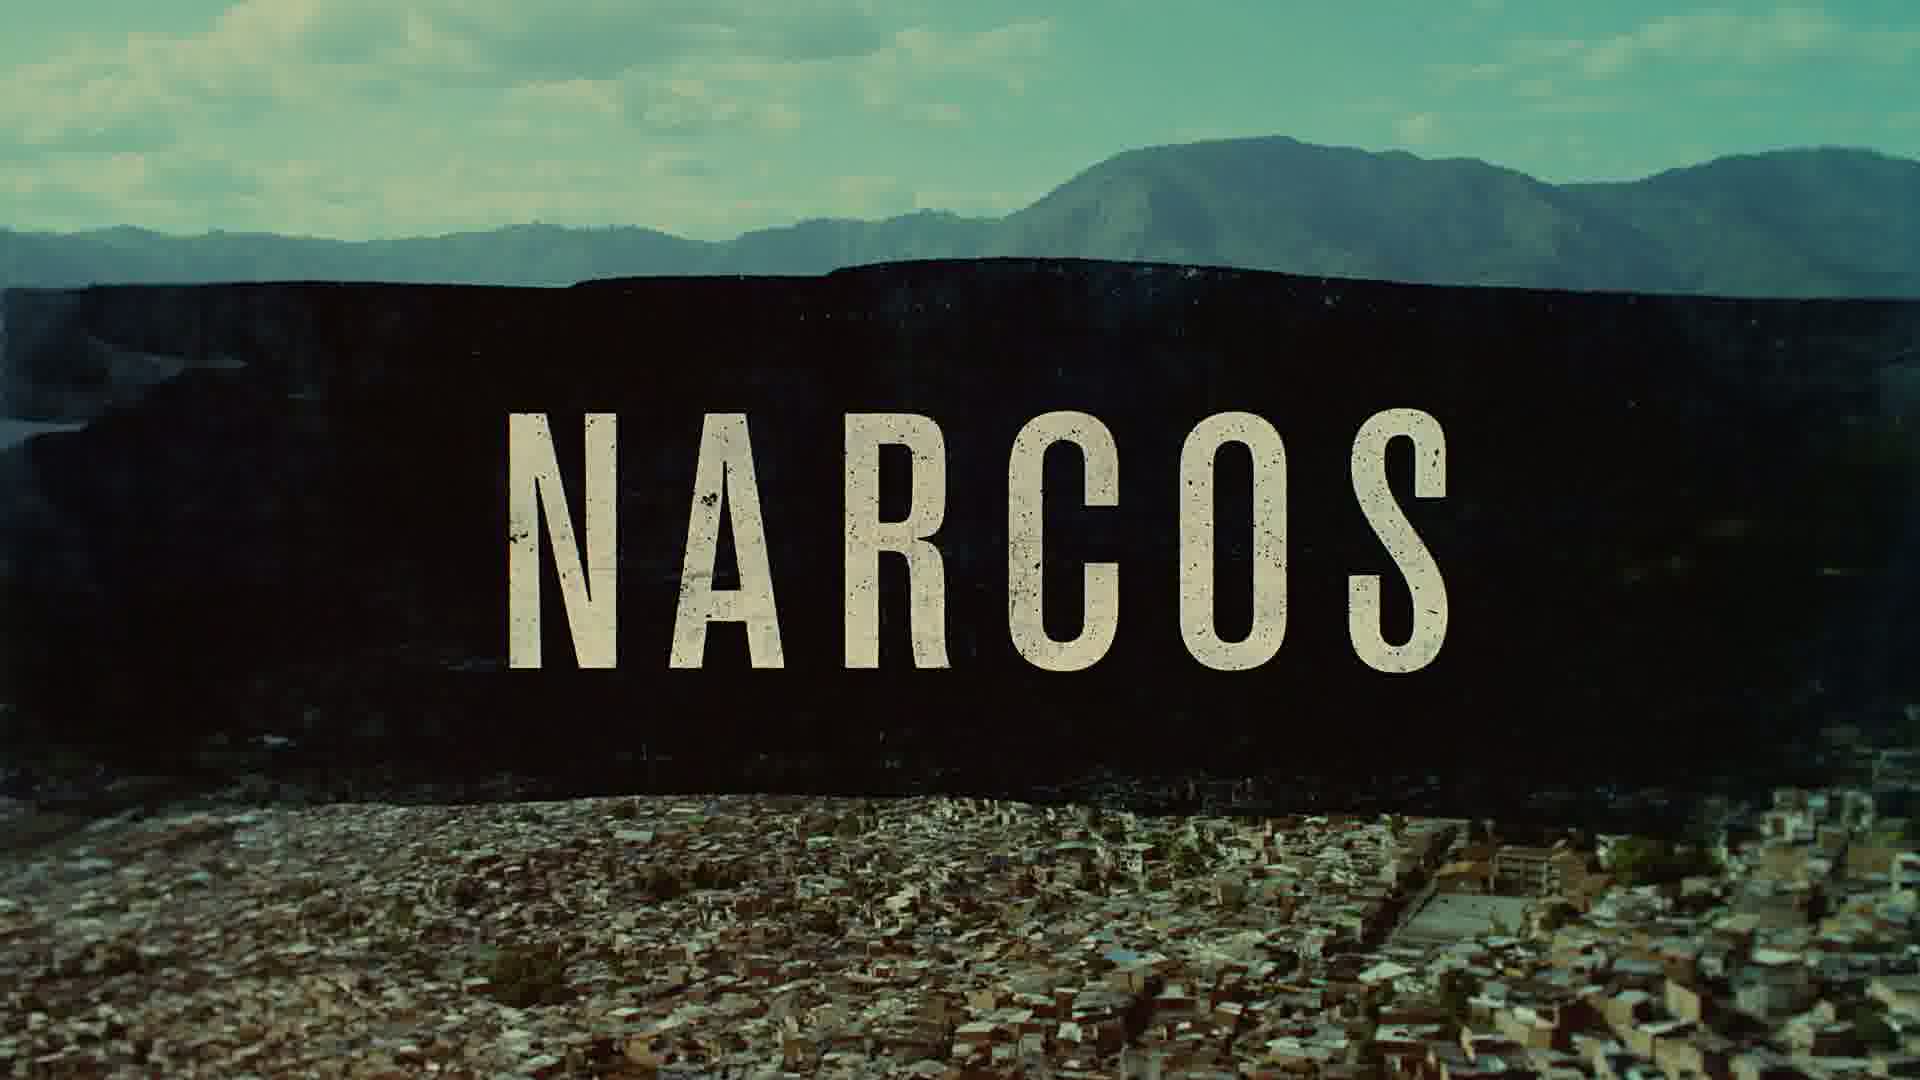 نارکس مکزیک (narcos mexico)